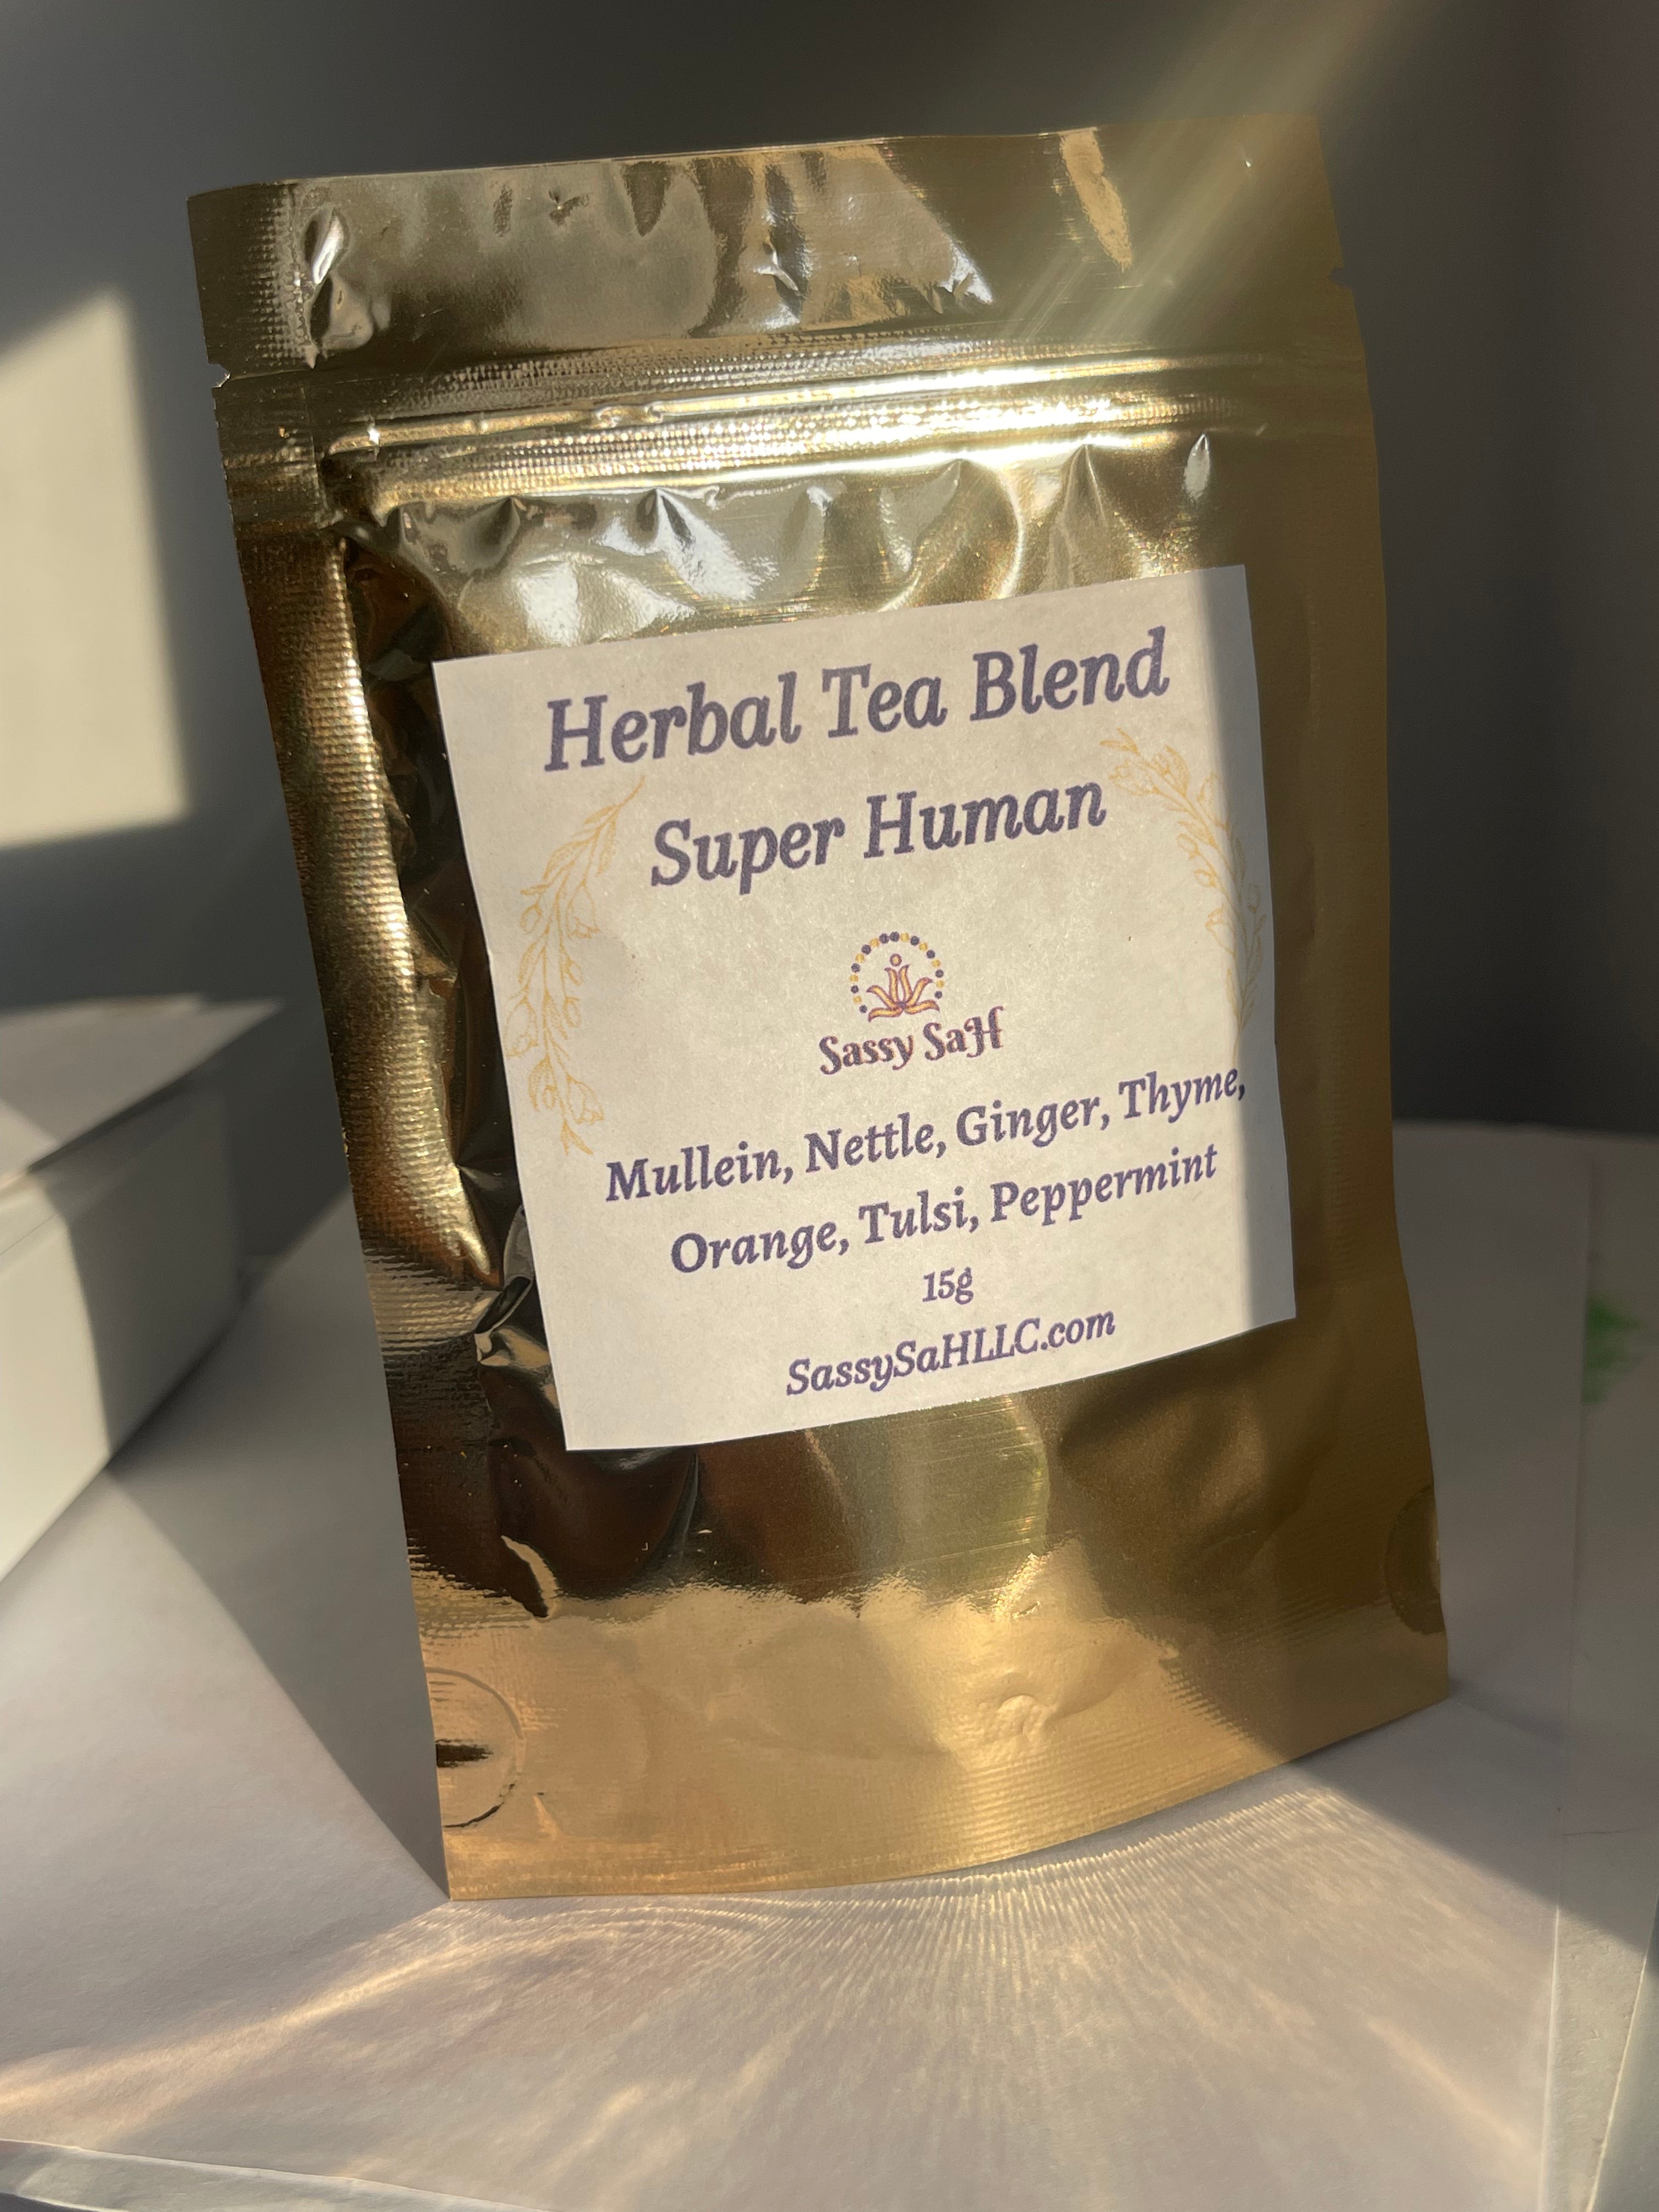 Super Human Tea Blend